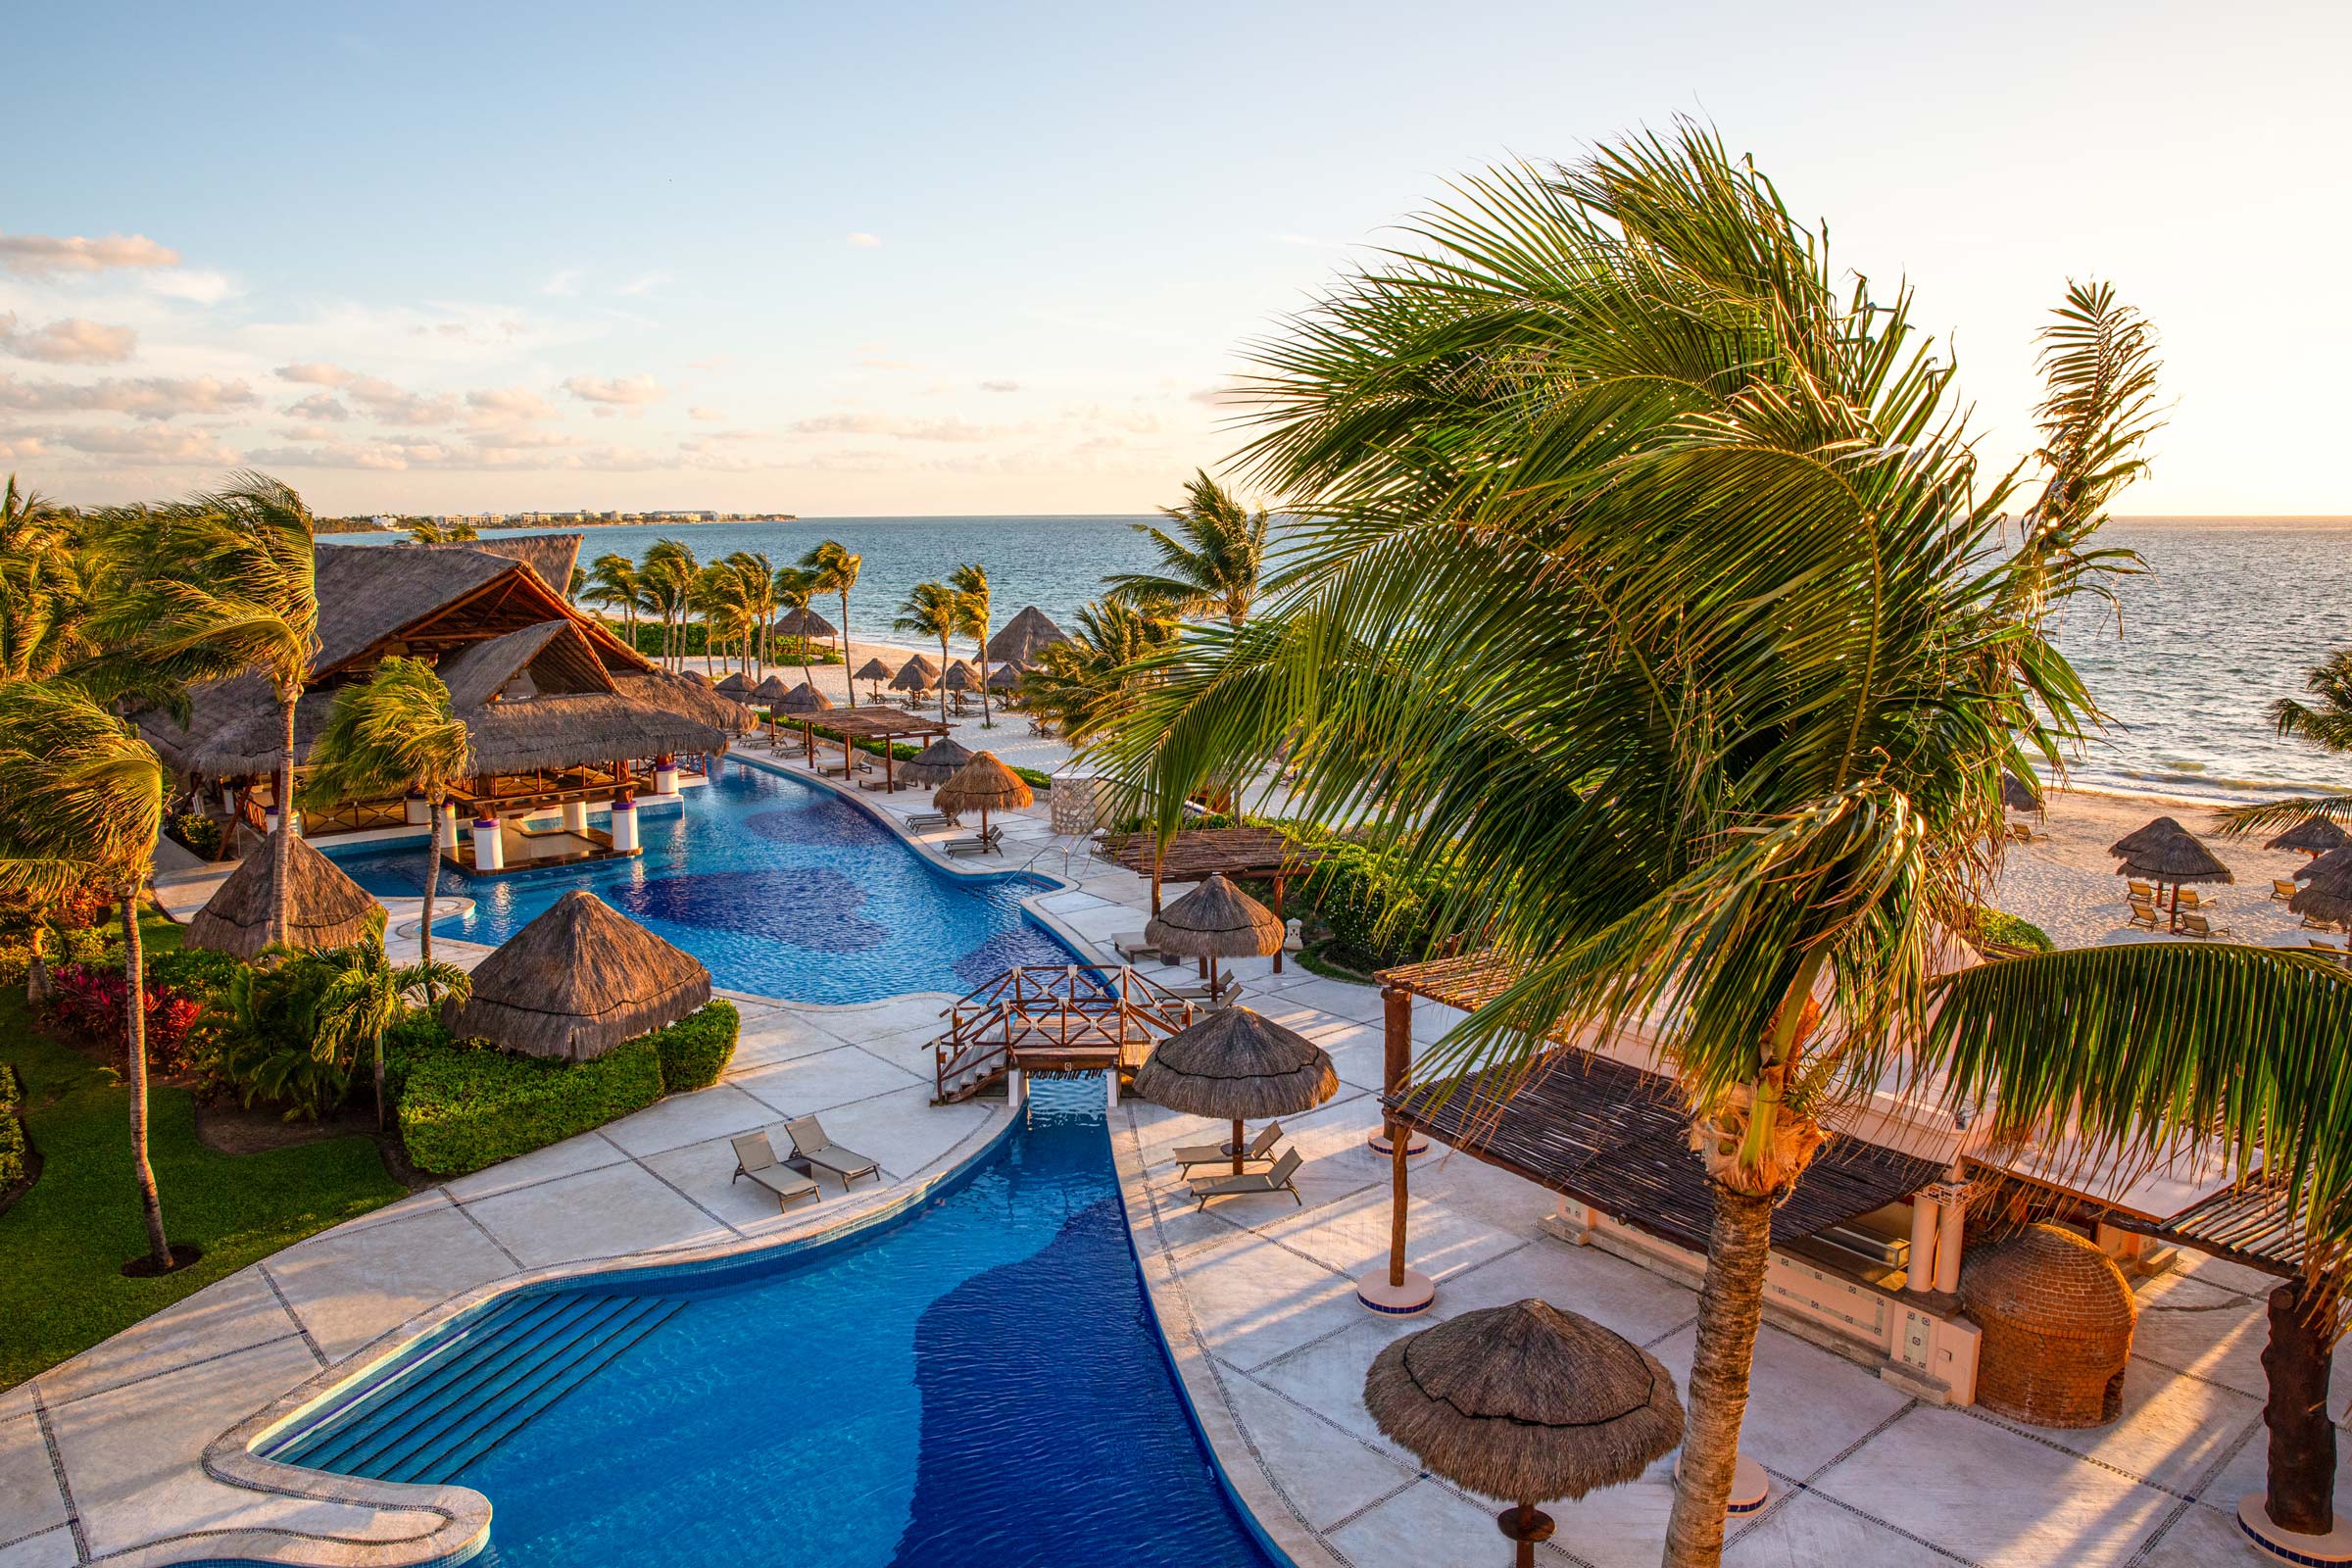 Obtenga Excelentes Ofertas en el Hotel Excellence Riviera Cancun con su Reserva Anticipada